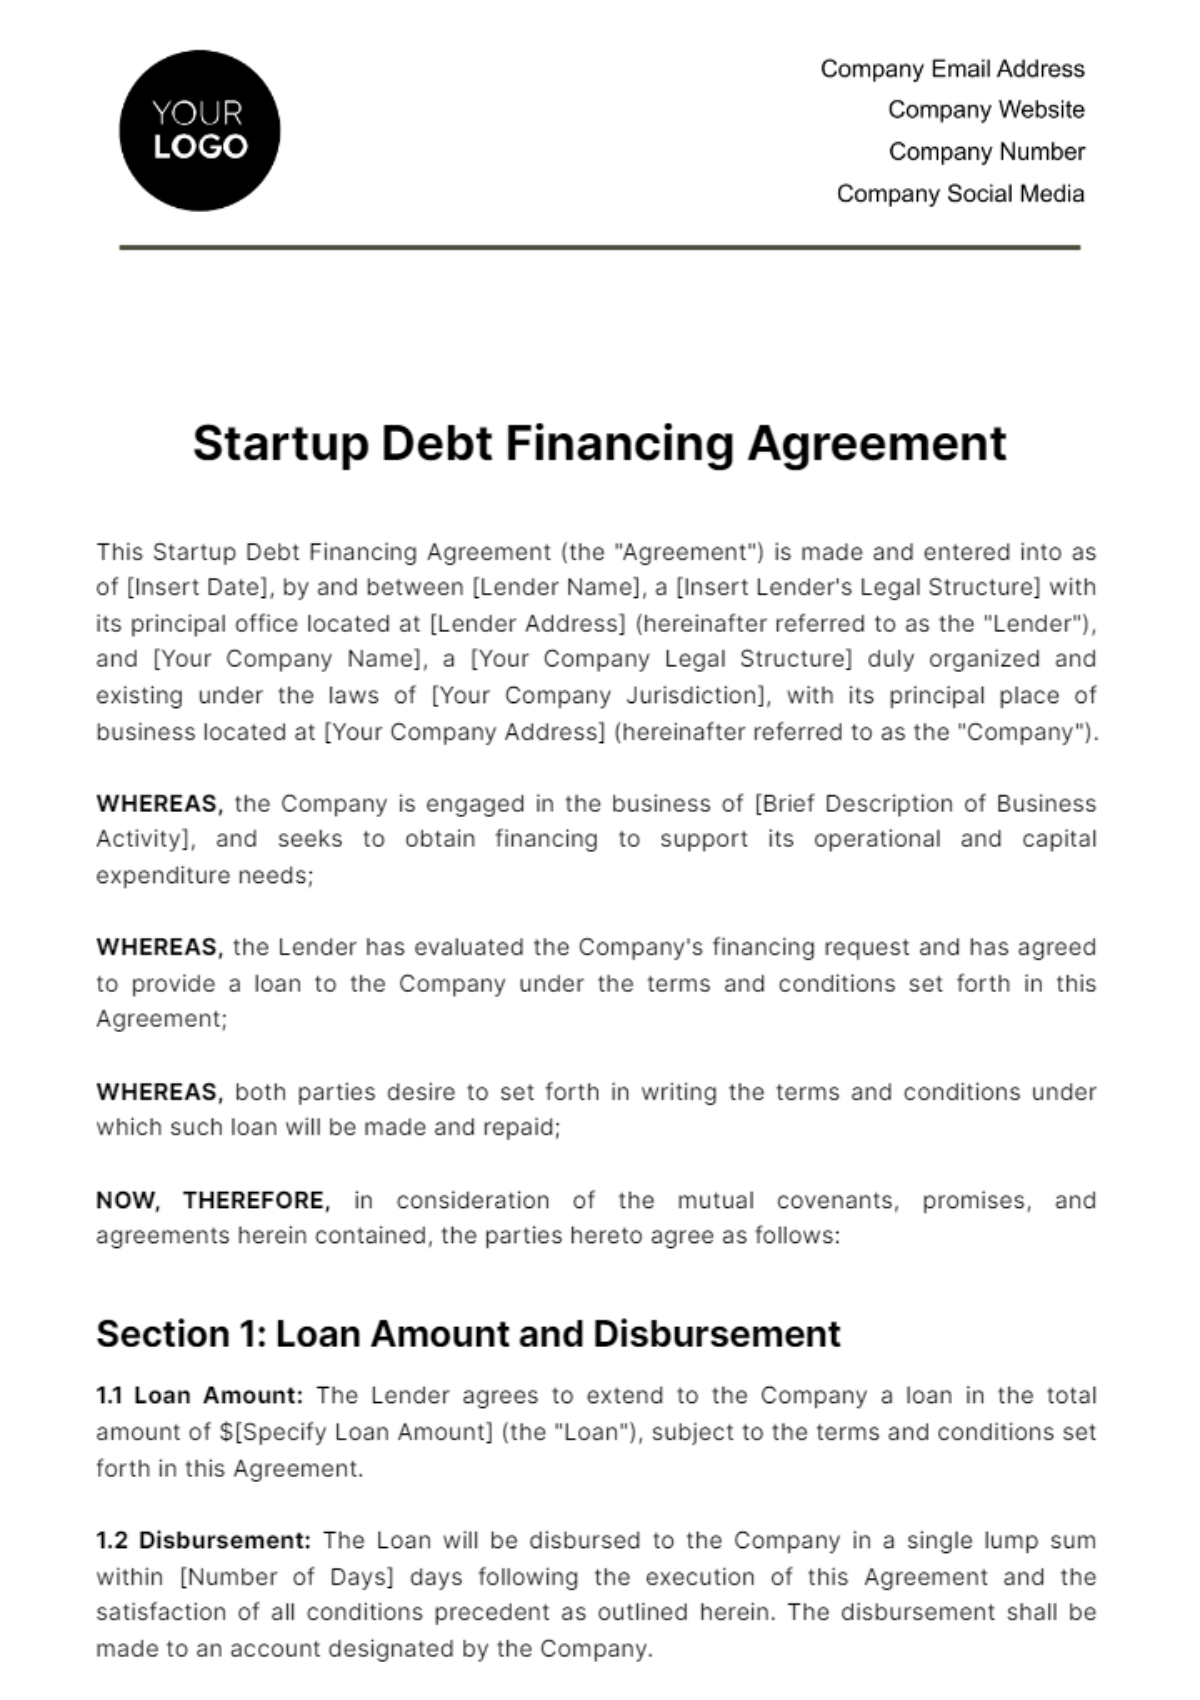 Startup Debt Financing Agreement Template